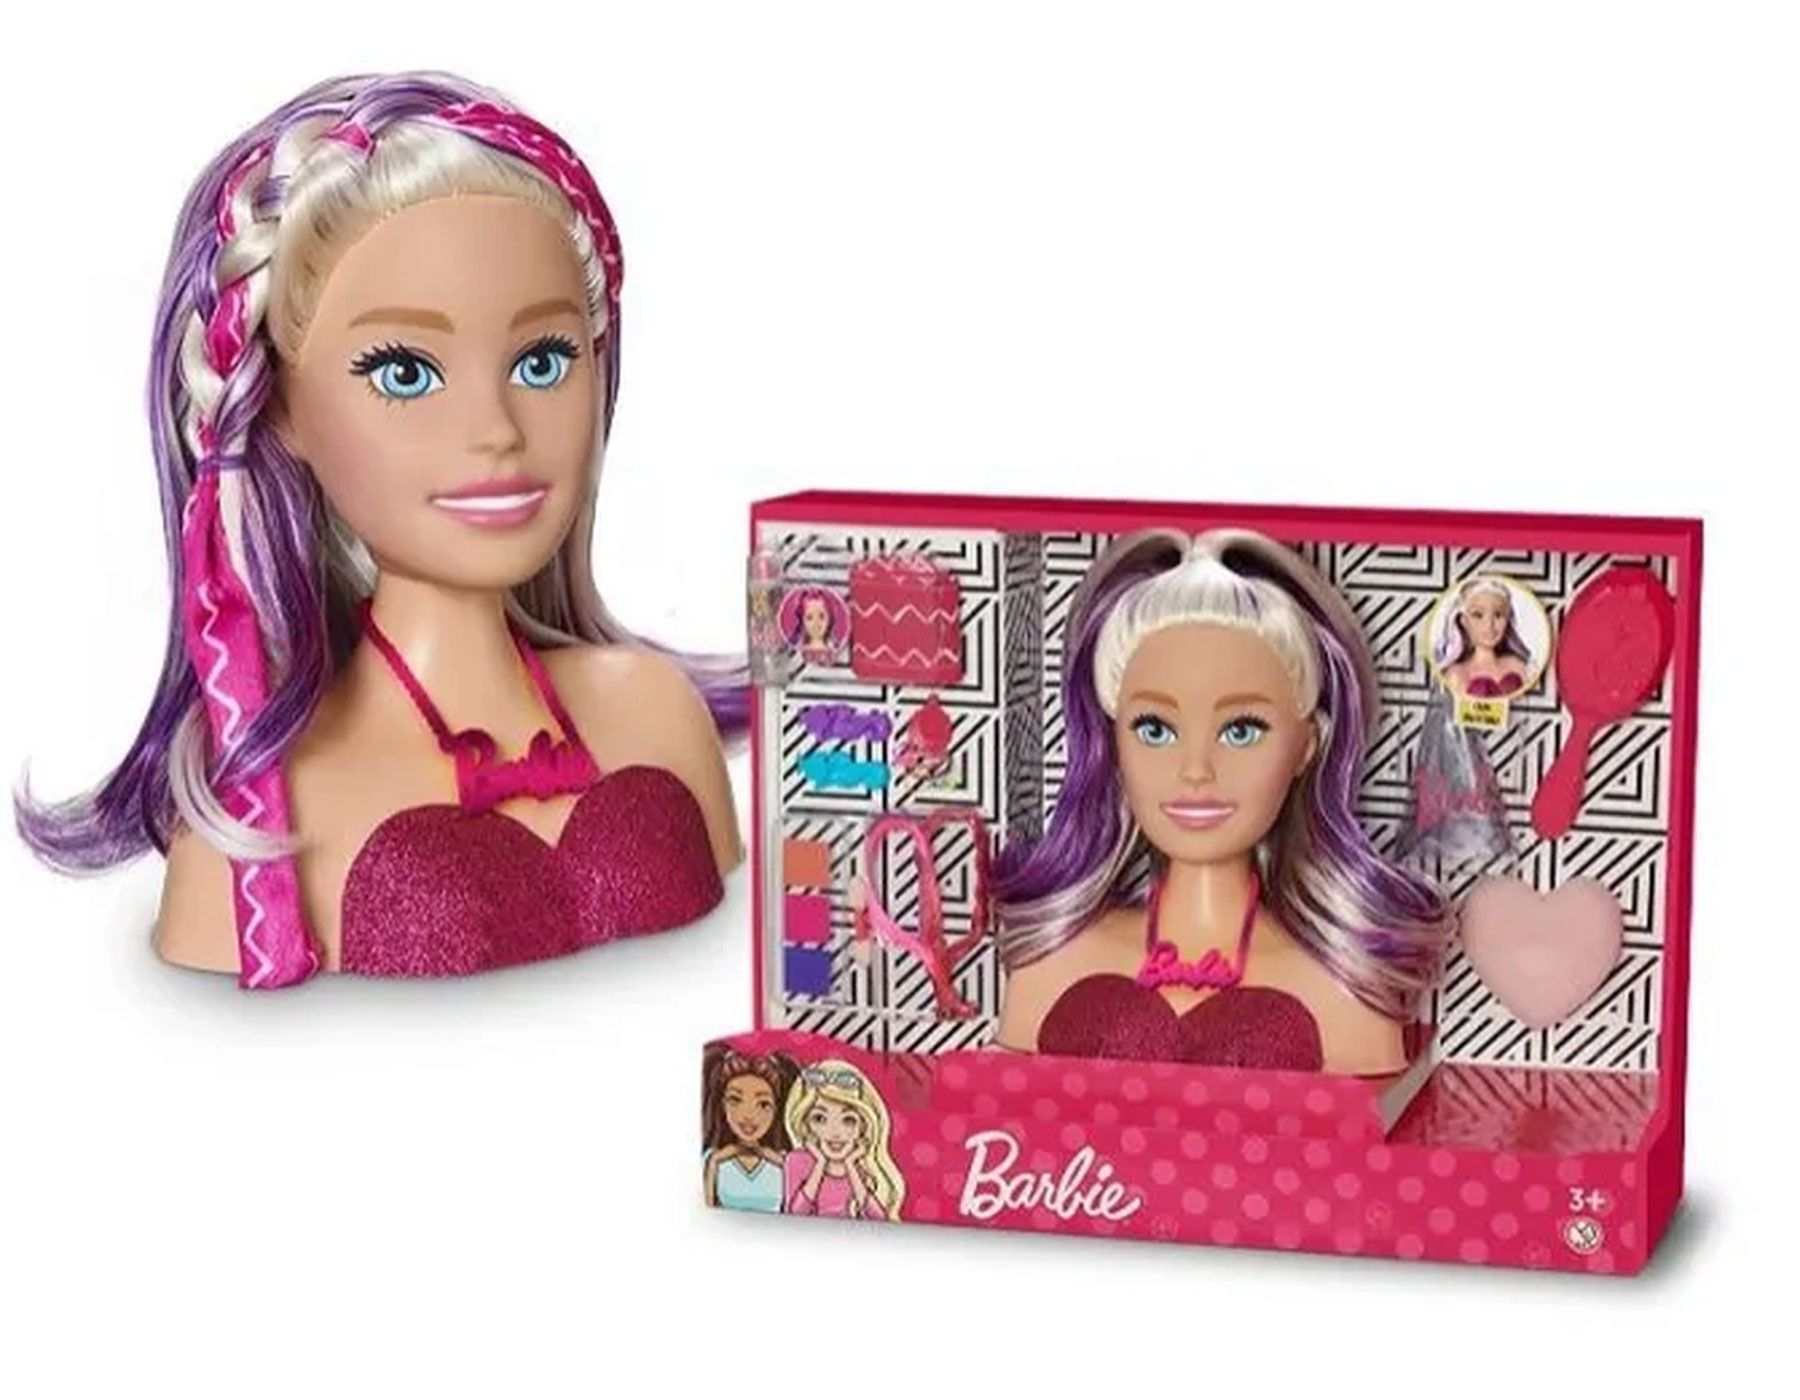 Jogo de Pintar Barbie 38